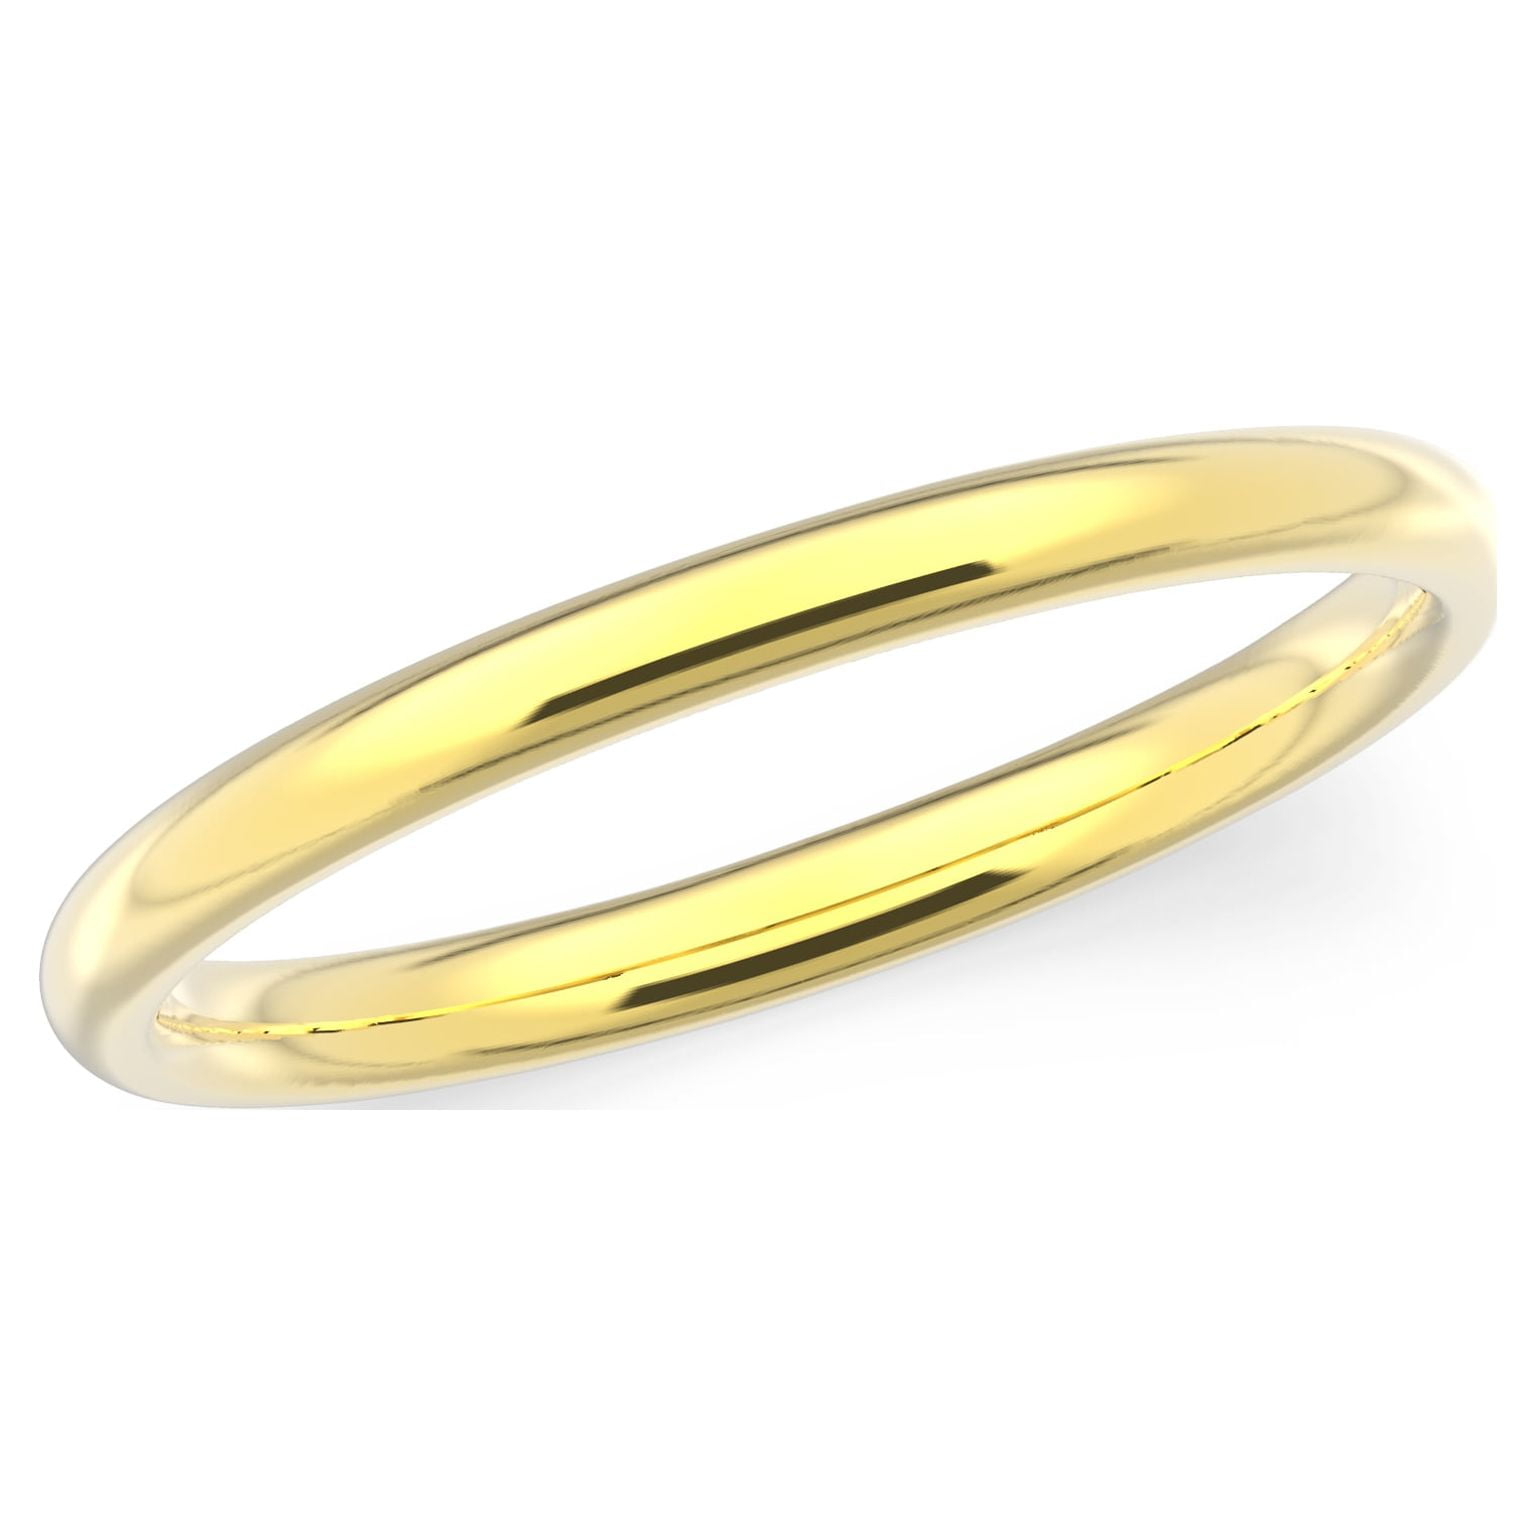 21 k yellow gold ring price $300 dollars weight 2.780 grams us size 7 |  MikeDaJeweler